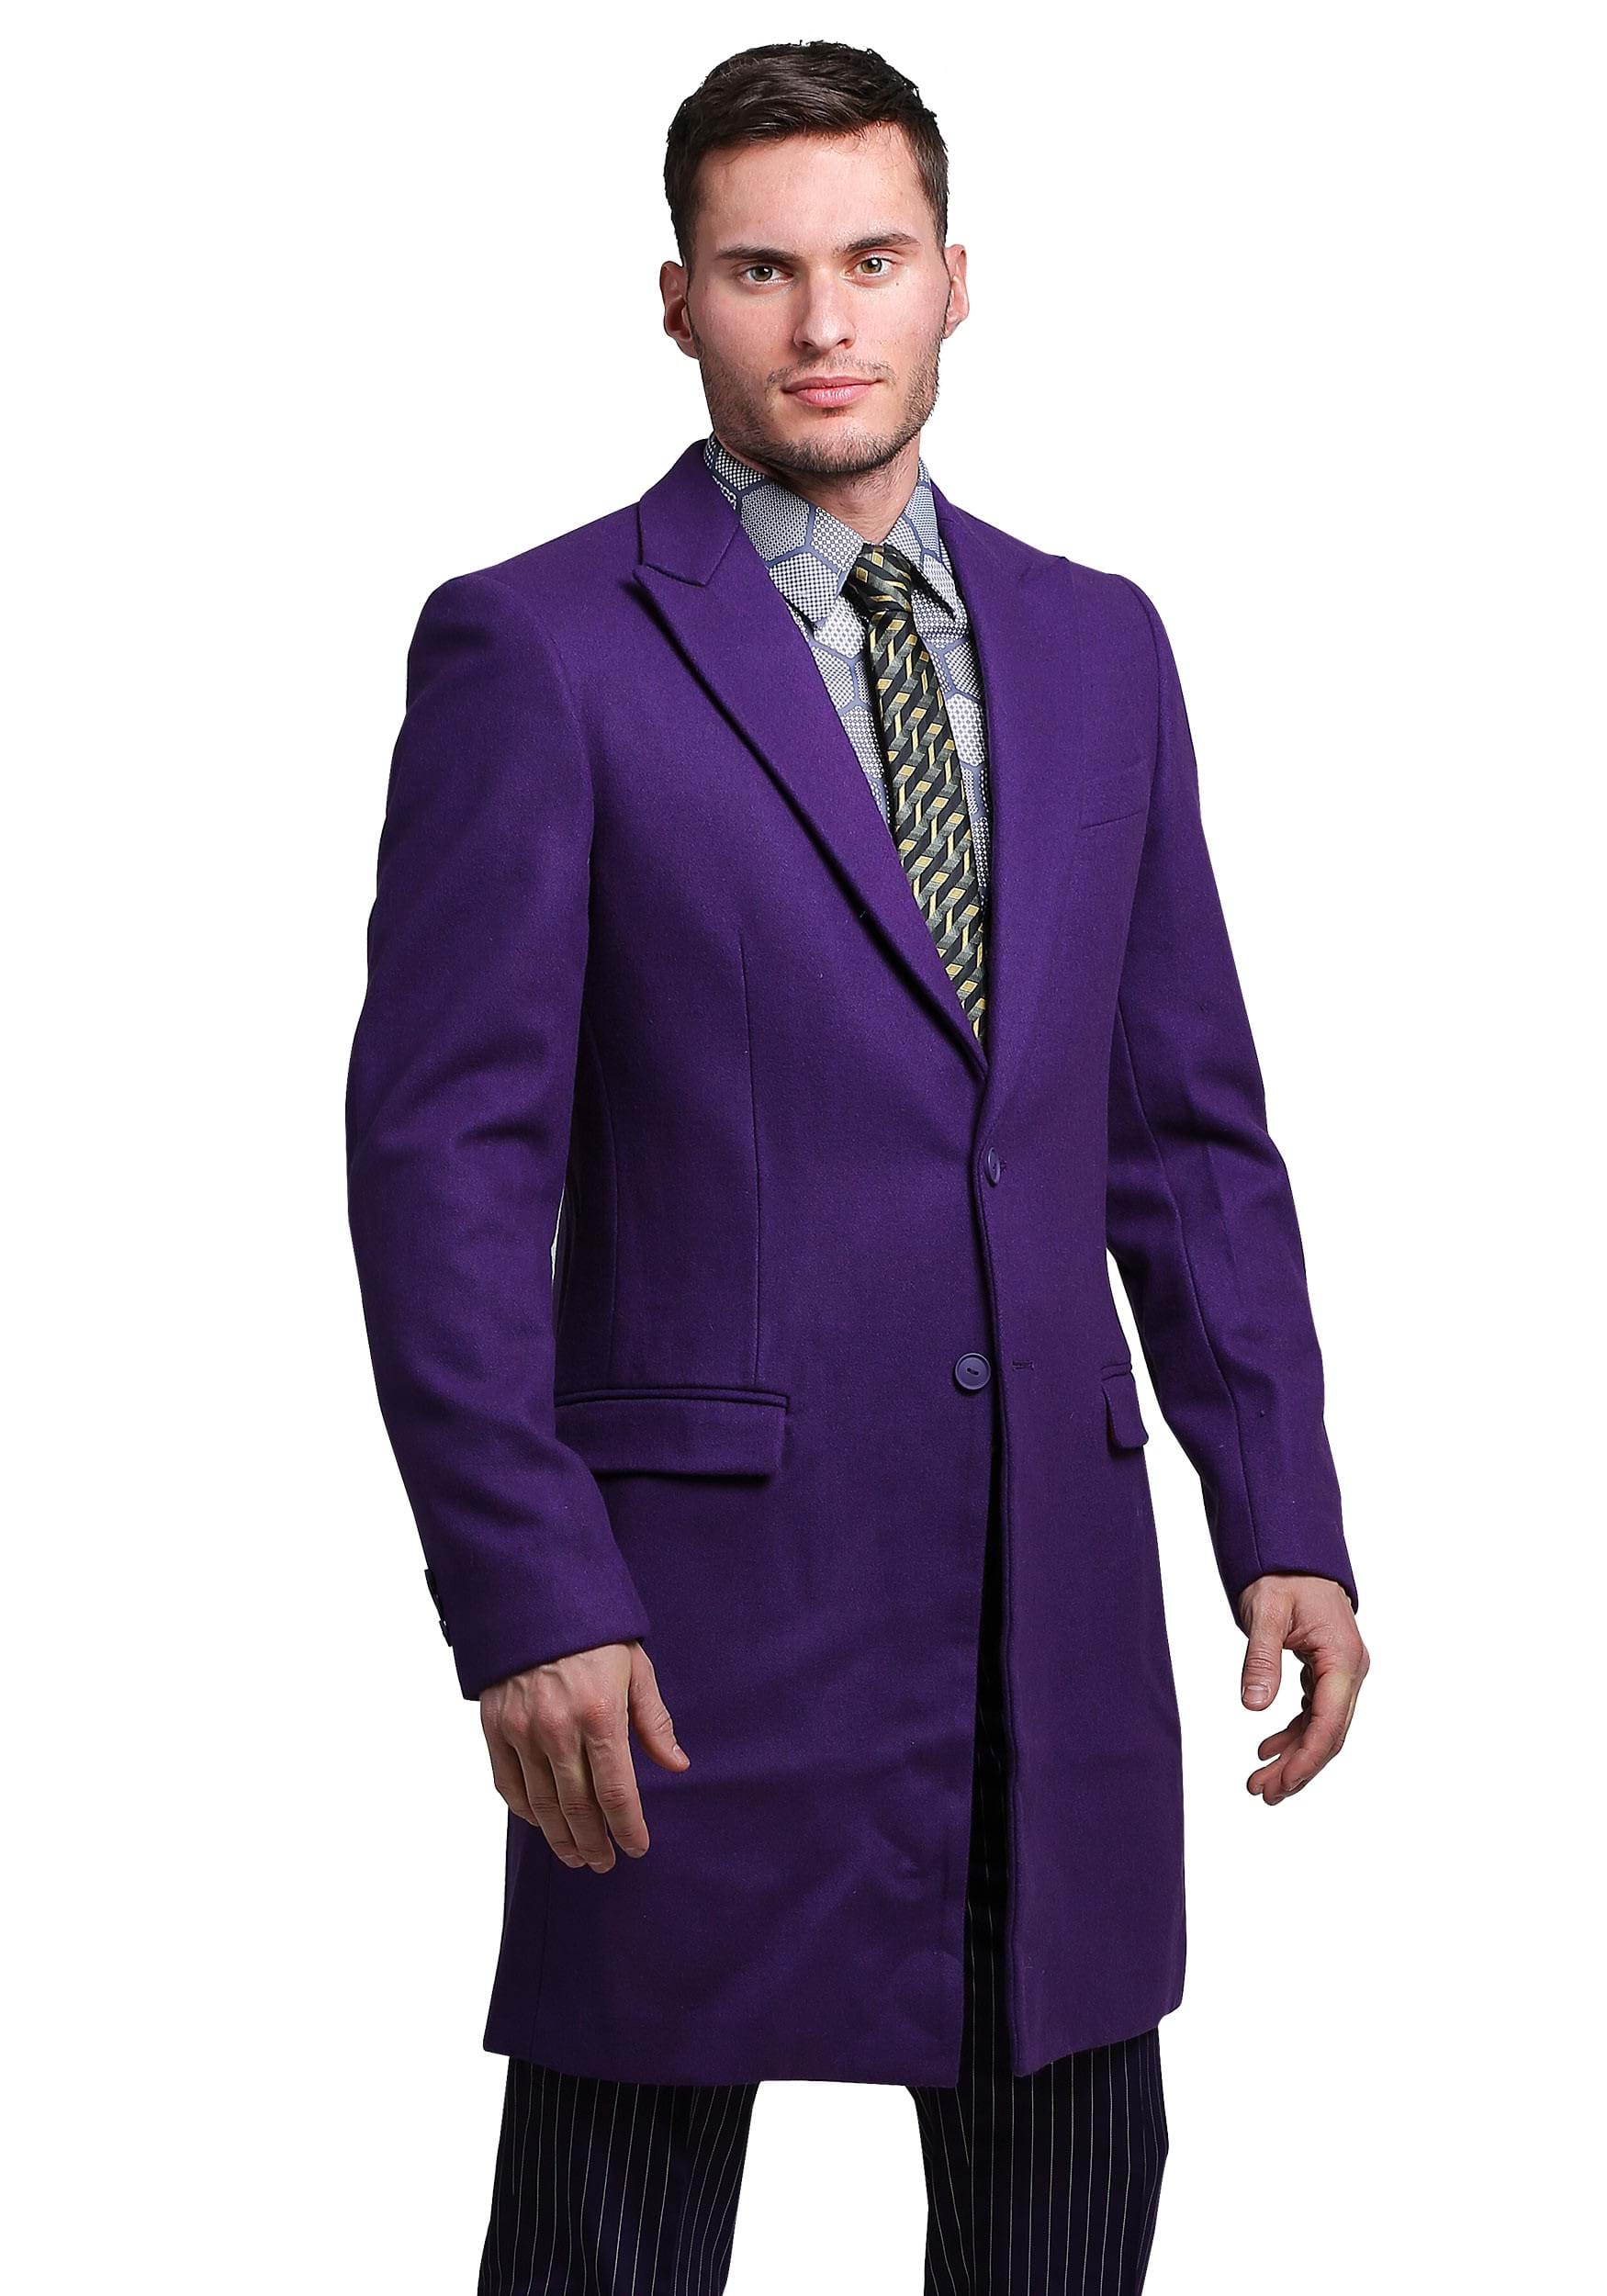 Image of FUN Suits The Dark Knight Joker Suit Overcoat